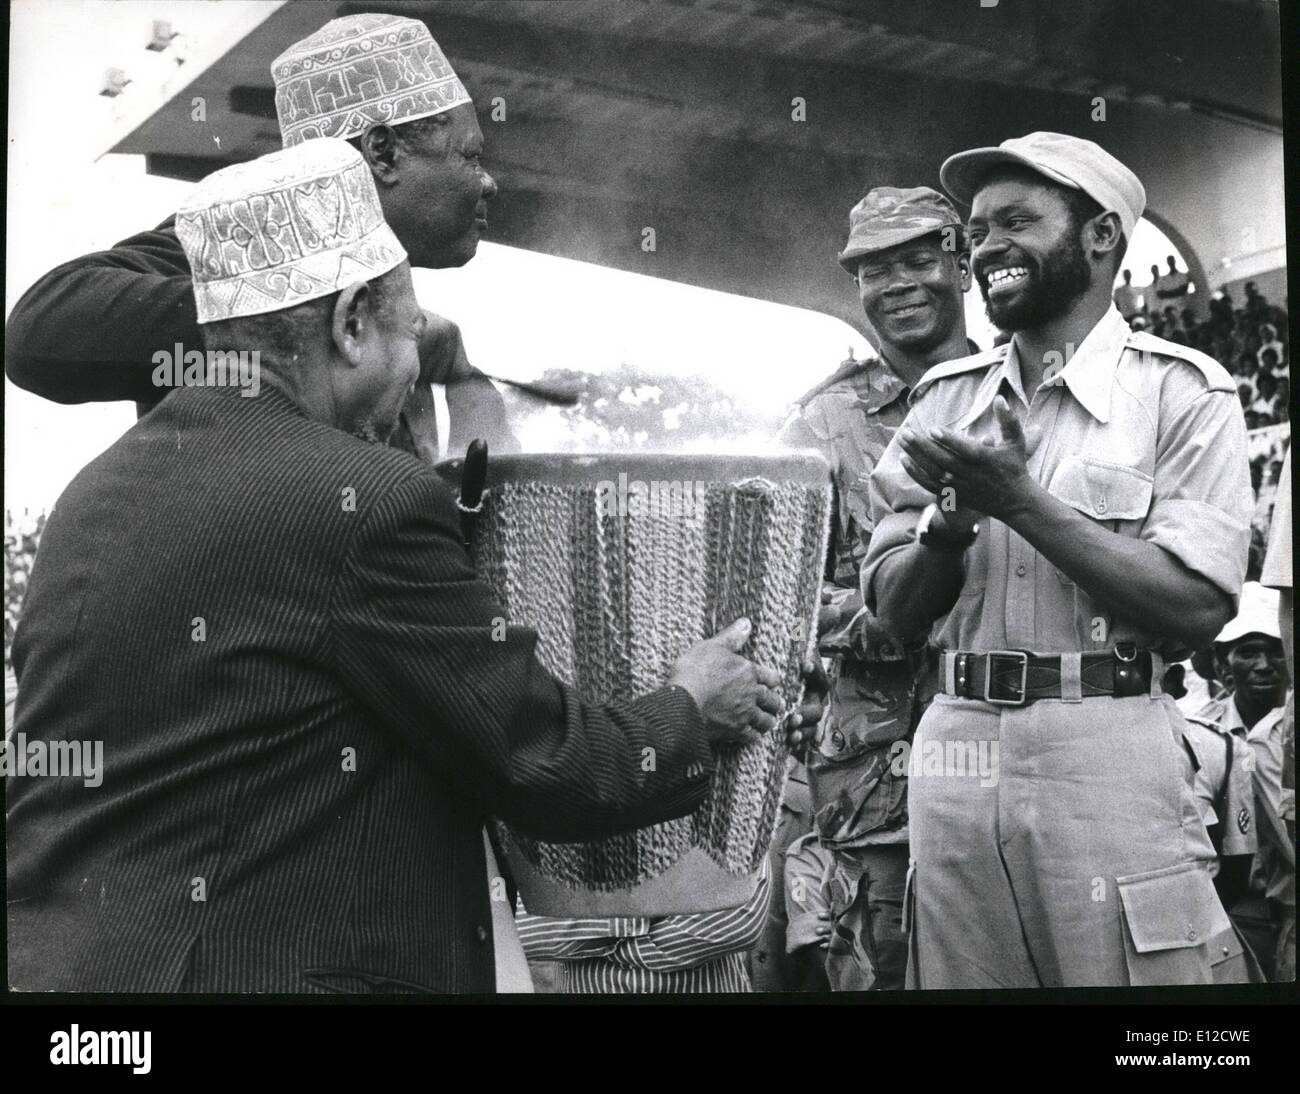 Le 12 décembre 2011 - Cérémonie d'Afrique d'une manière typiquement tanzaniennes, anciens battre un tambour pour Samora Machel, le chef charismatique du Frelimo, qui était au départ du pays qui a fourni une base pour la guérilla pendant plus d'une décennie, pour retourner à sa patrie dont il sera le premier président. Dans les pays d'Afrique, des fûts sont des symboles de paix ainsi que de la guerre, et leur son augure bonne chance pour Machel dans son laborts à venir à la tête d'un État indépendant, ainsi que rendre hommage à son courage et compétence en tant que guerrier. Banque D'Images